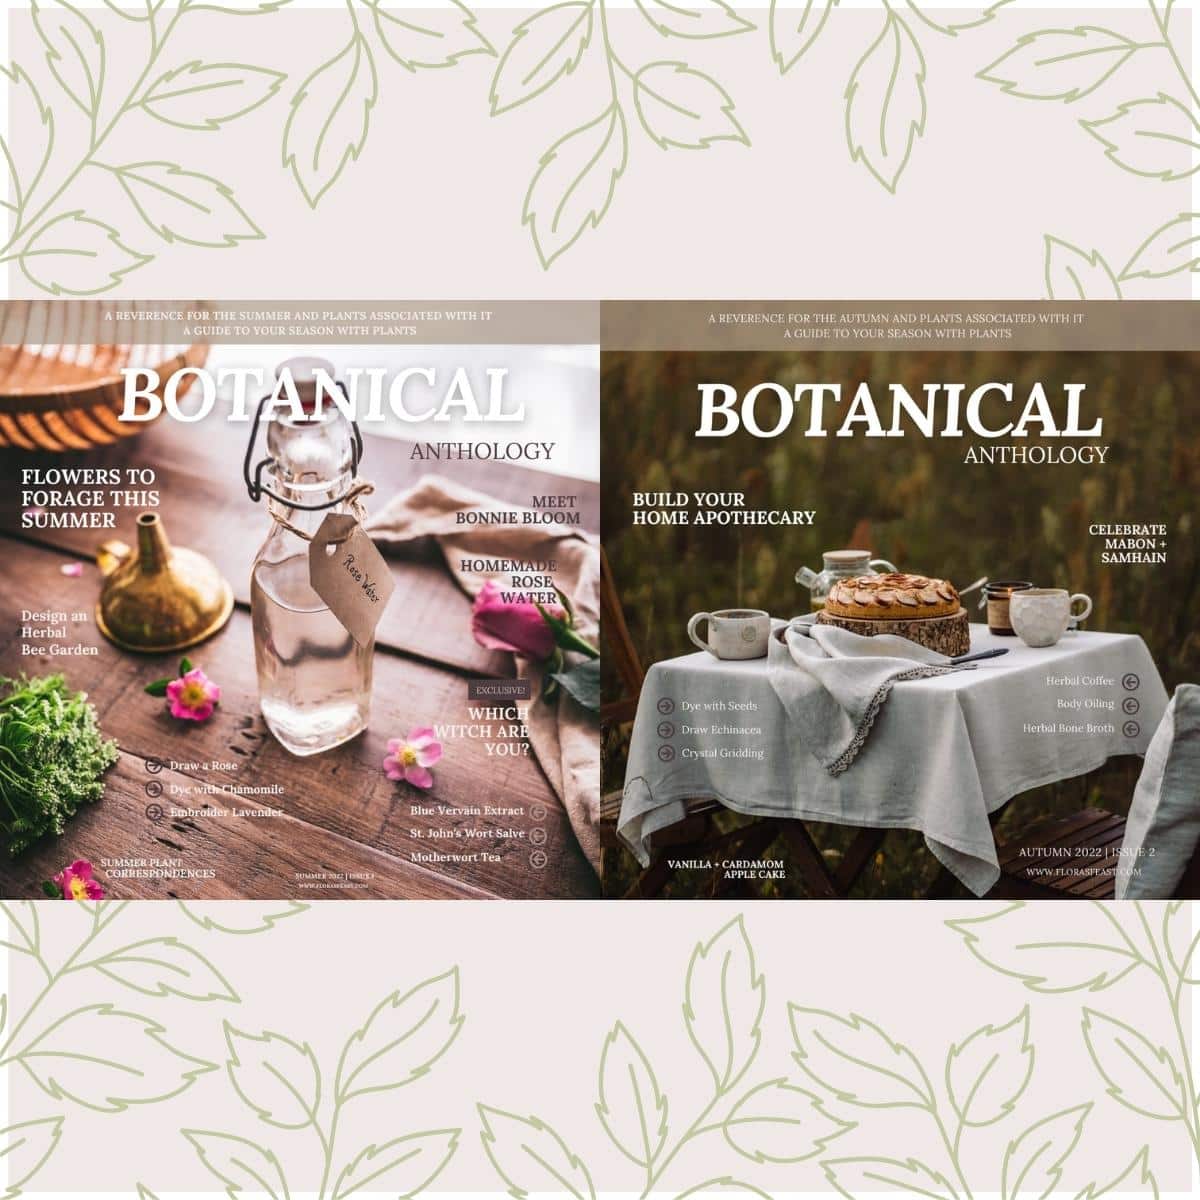 Two covers of the magazine botanical anthology.